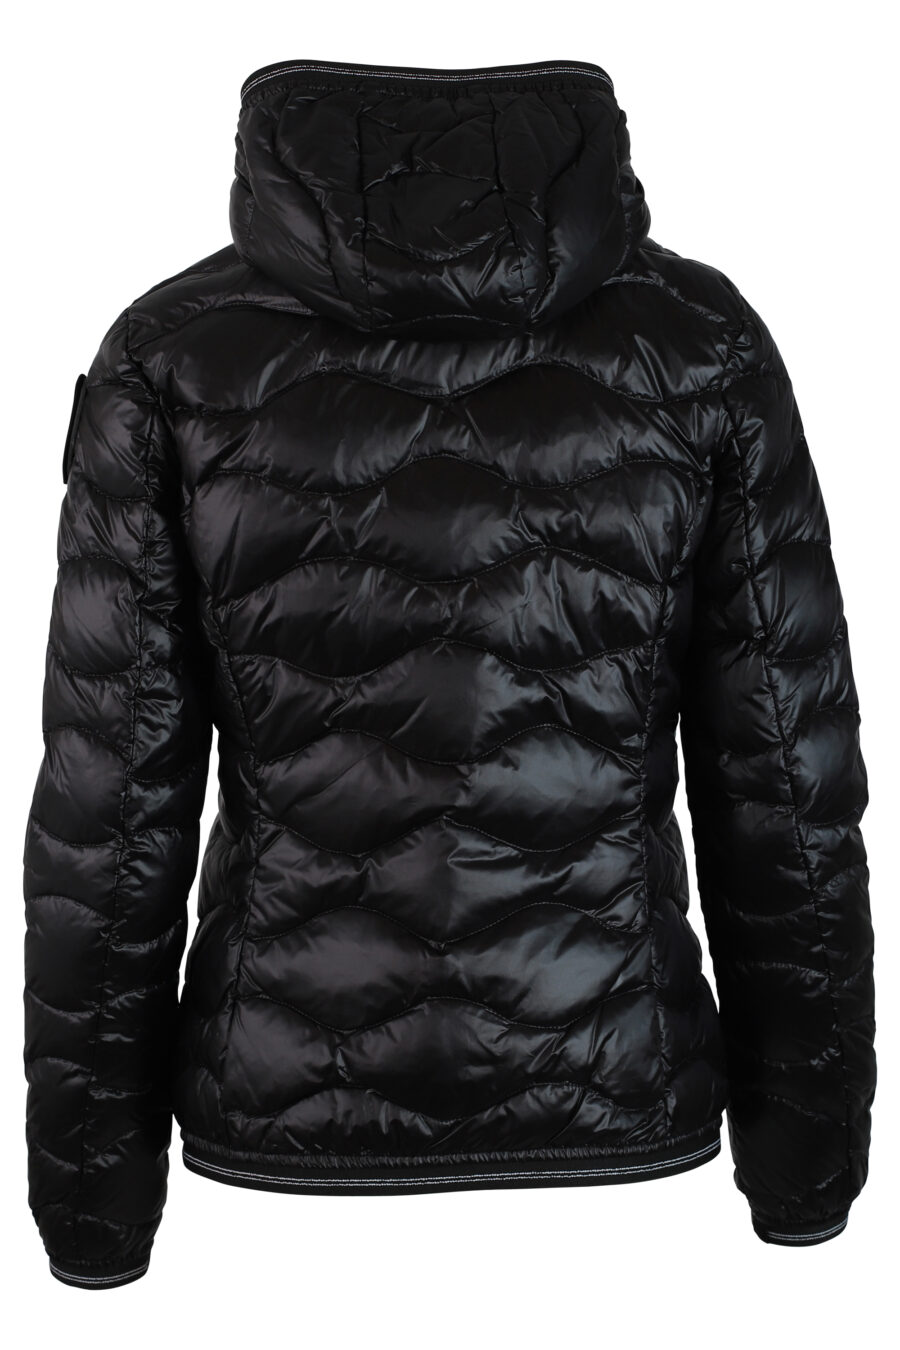 Schwarze Jacke mit Kapuze und Wellenlinien mit seitlichem Aufnäher - IMG 0225